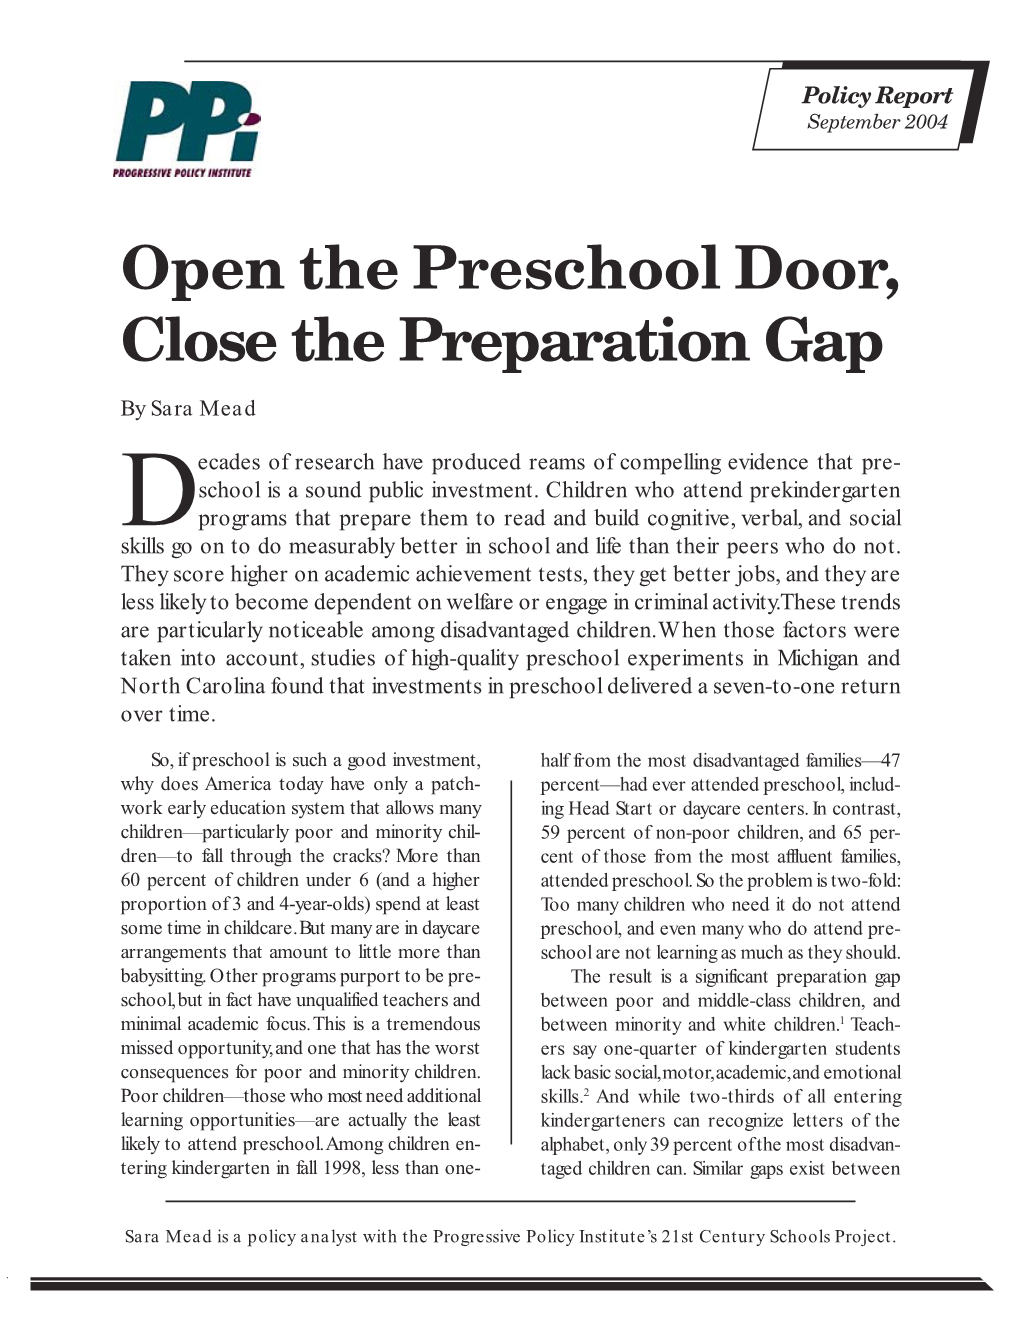 Open the Preschool Door, Close the Preparation Gap